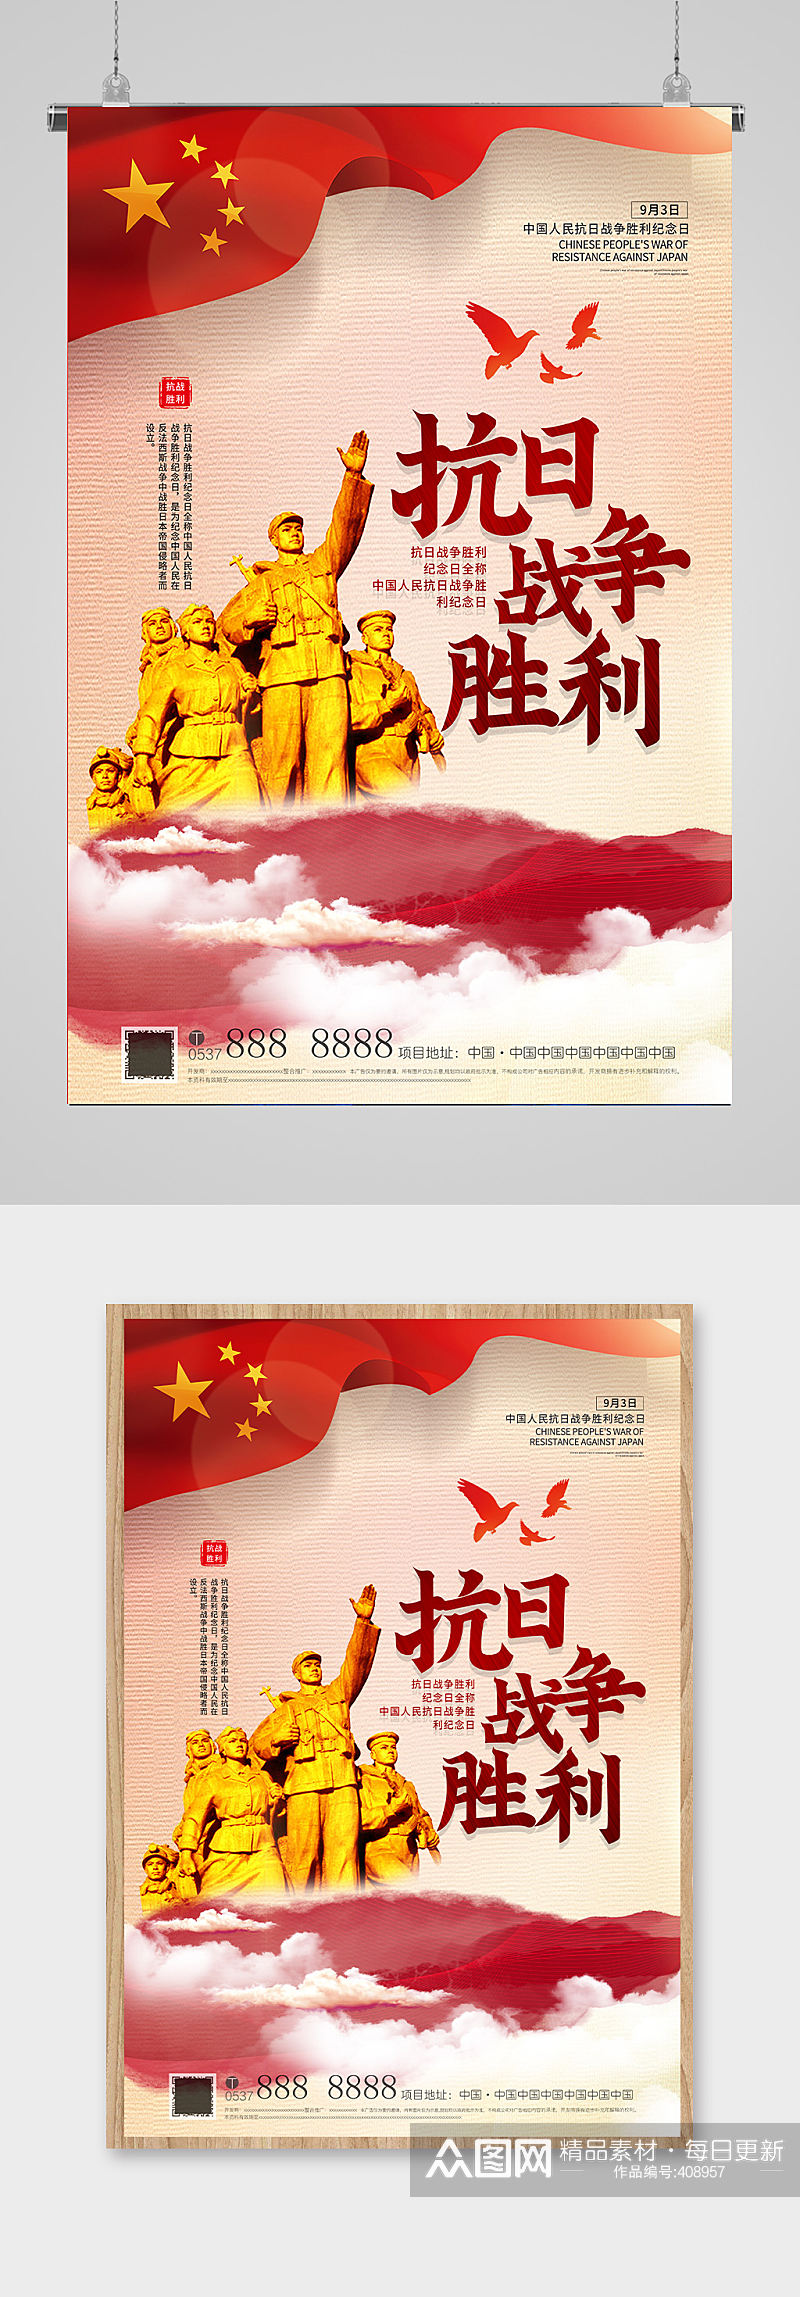 中国抗战胜利纪念日 抗日战争胜利纪念日95周年海报素材